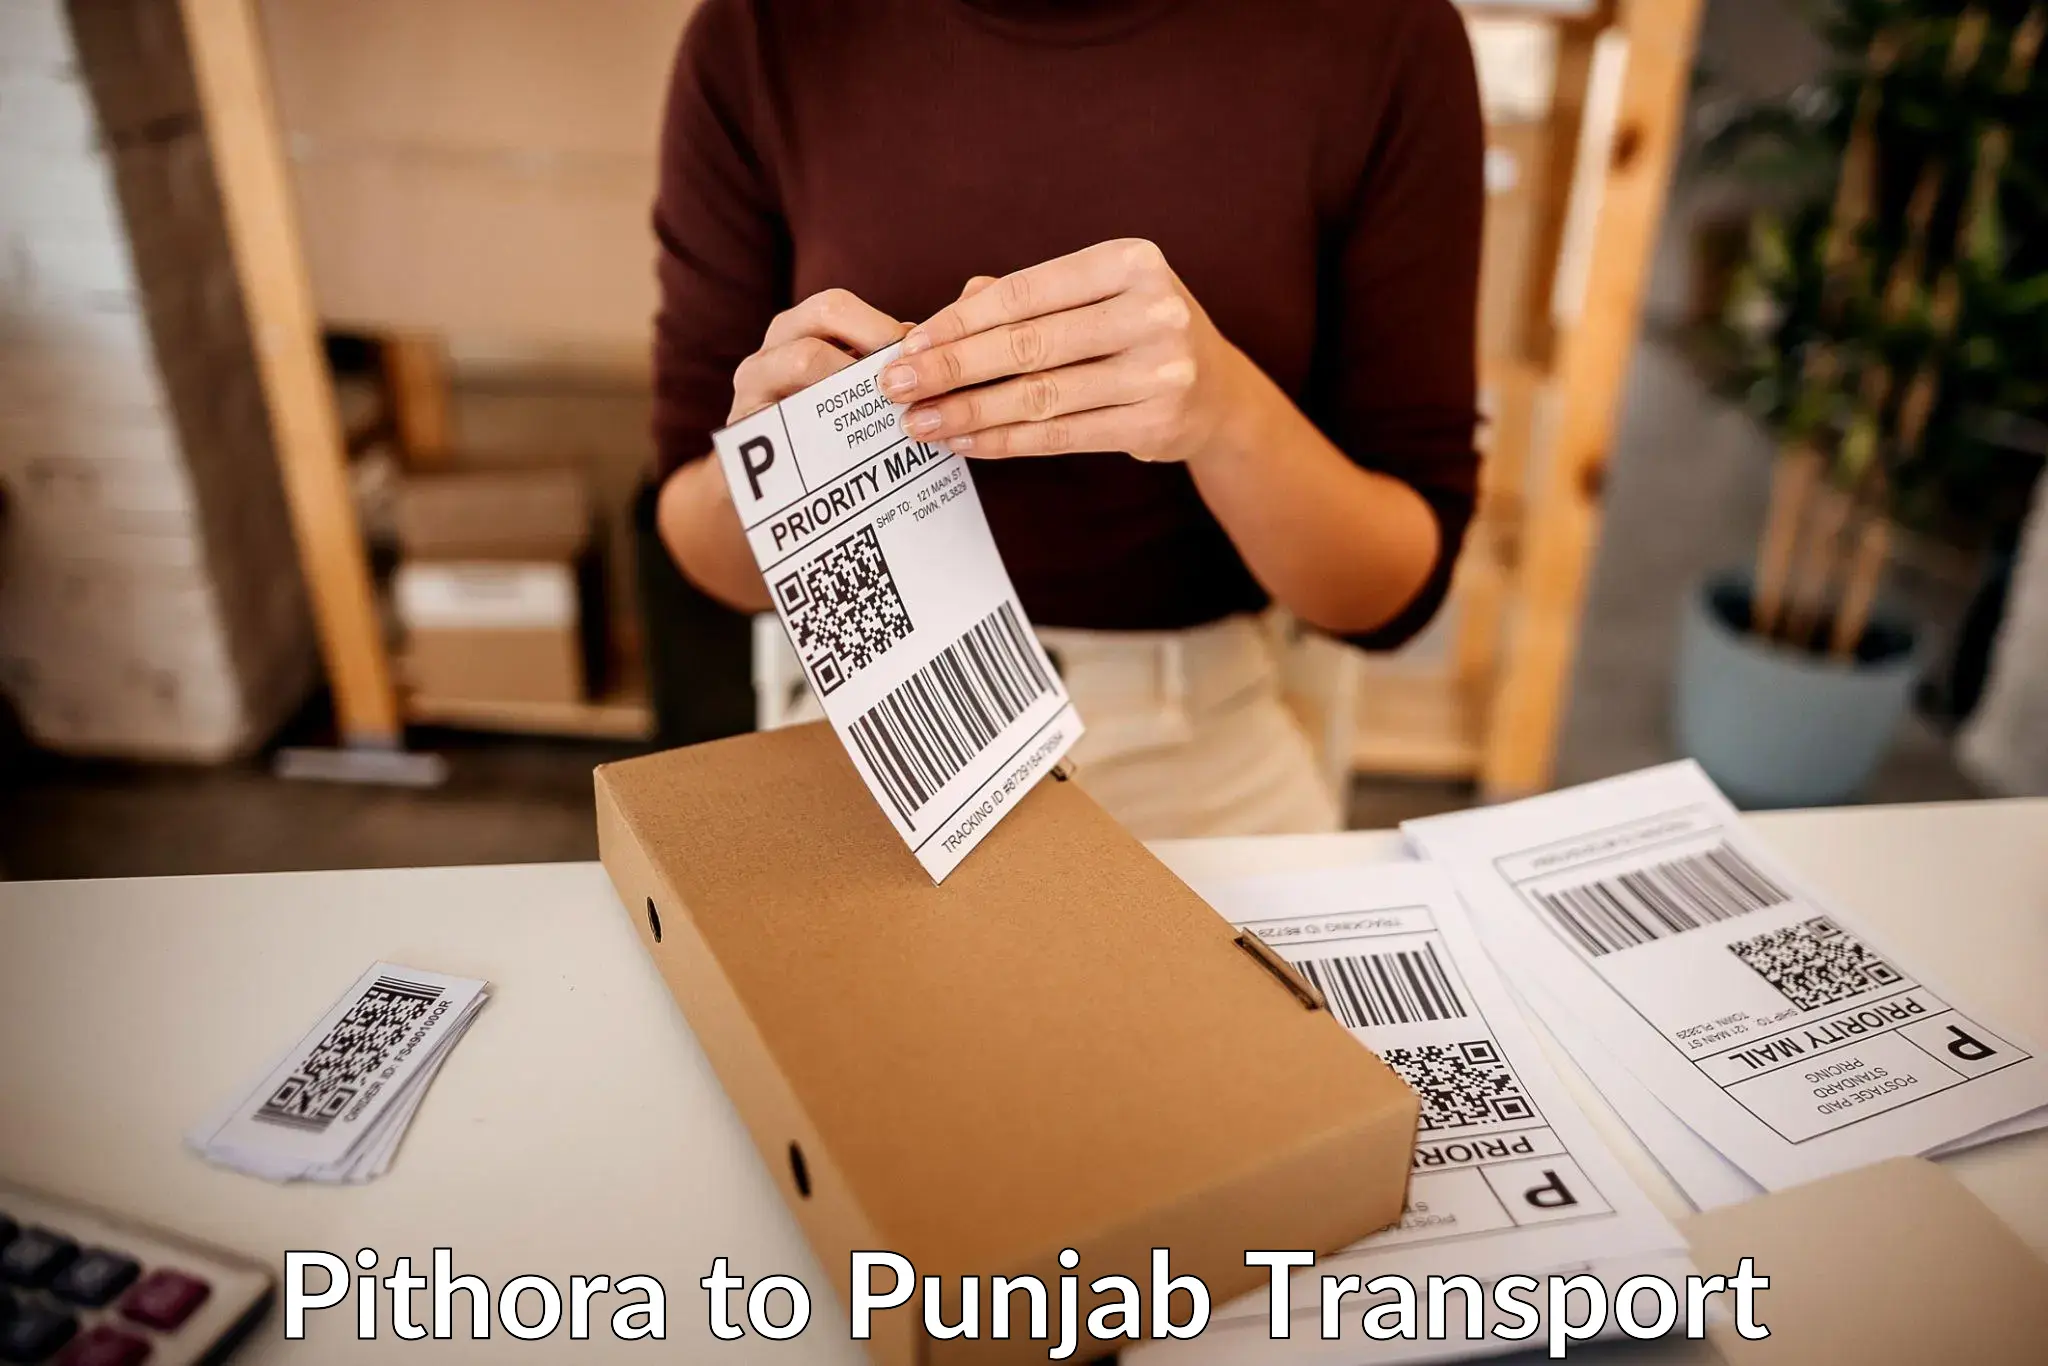 Transportation services Pithora to Punjab